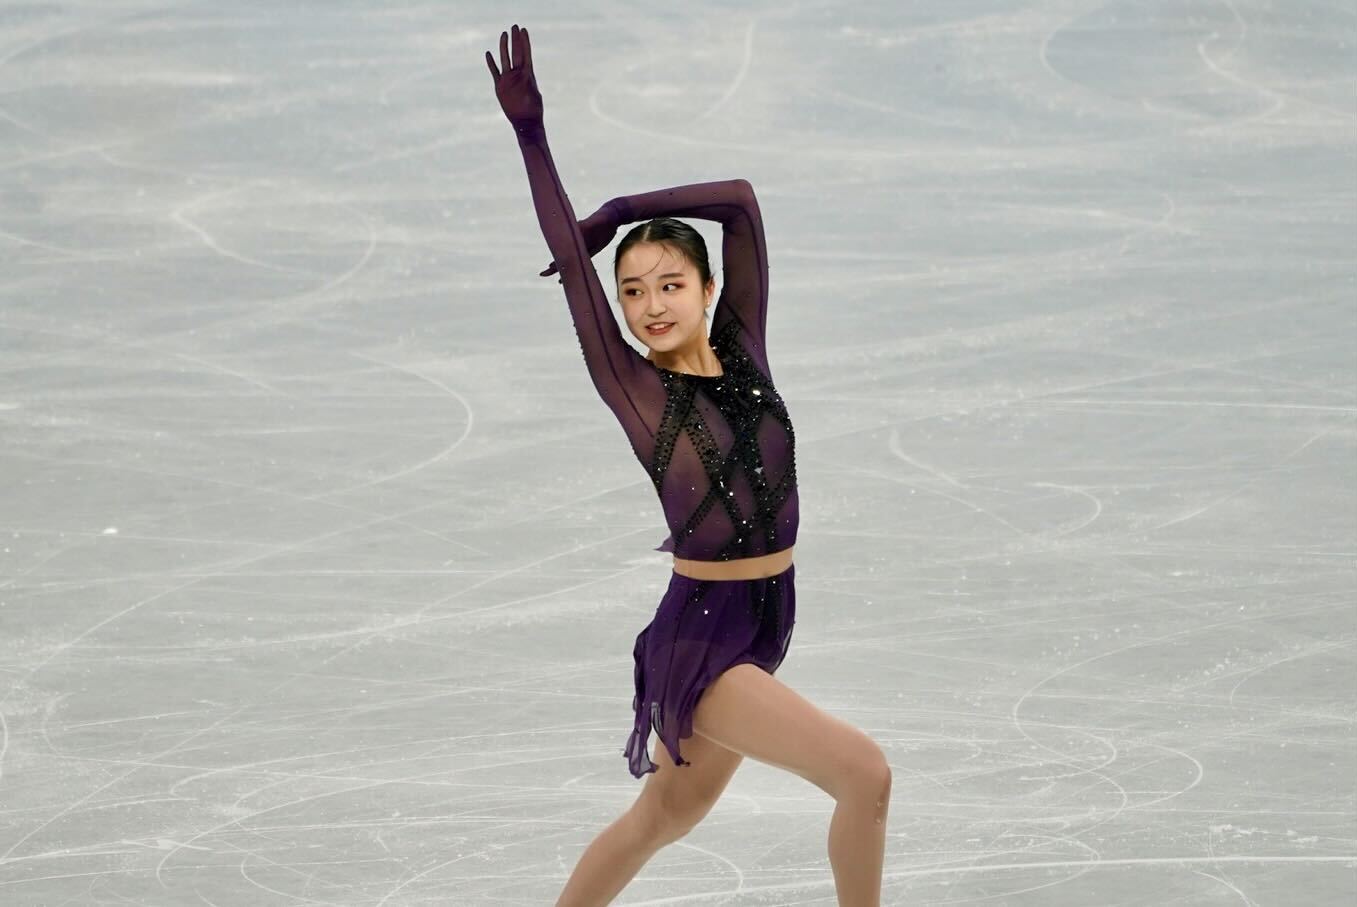 Zhu finishing up her short program routine on February 15.